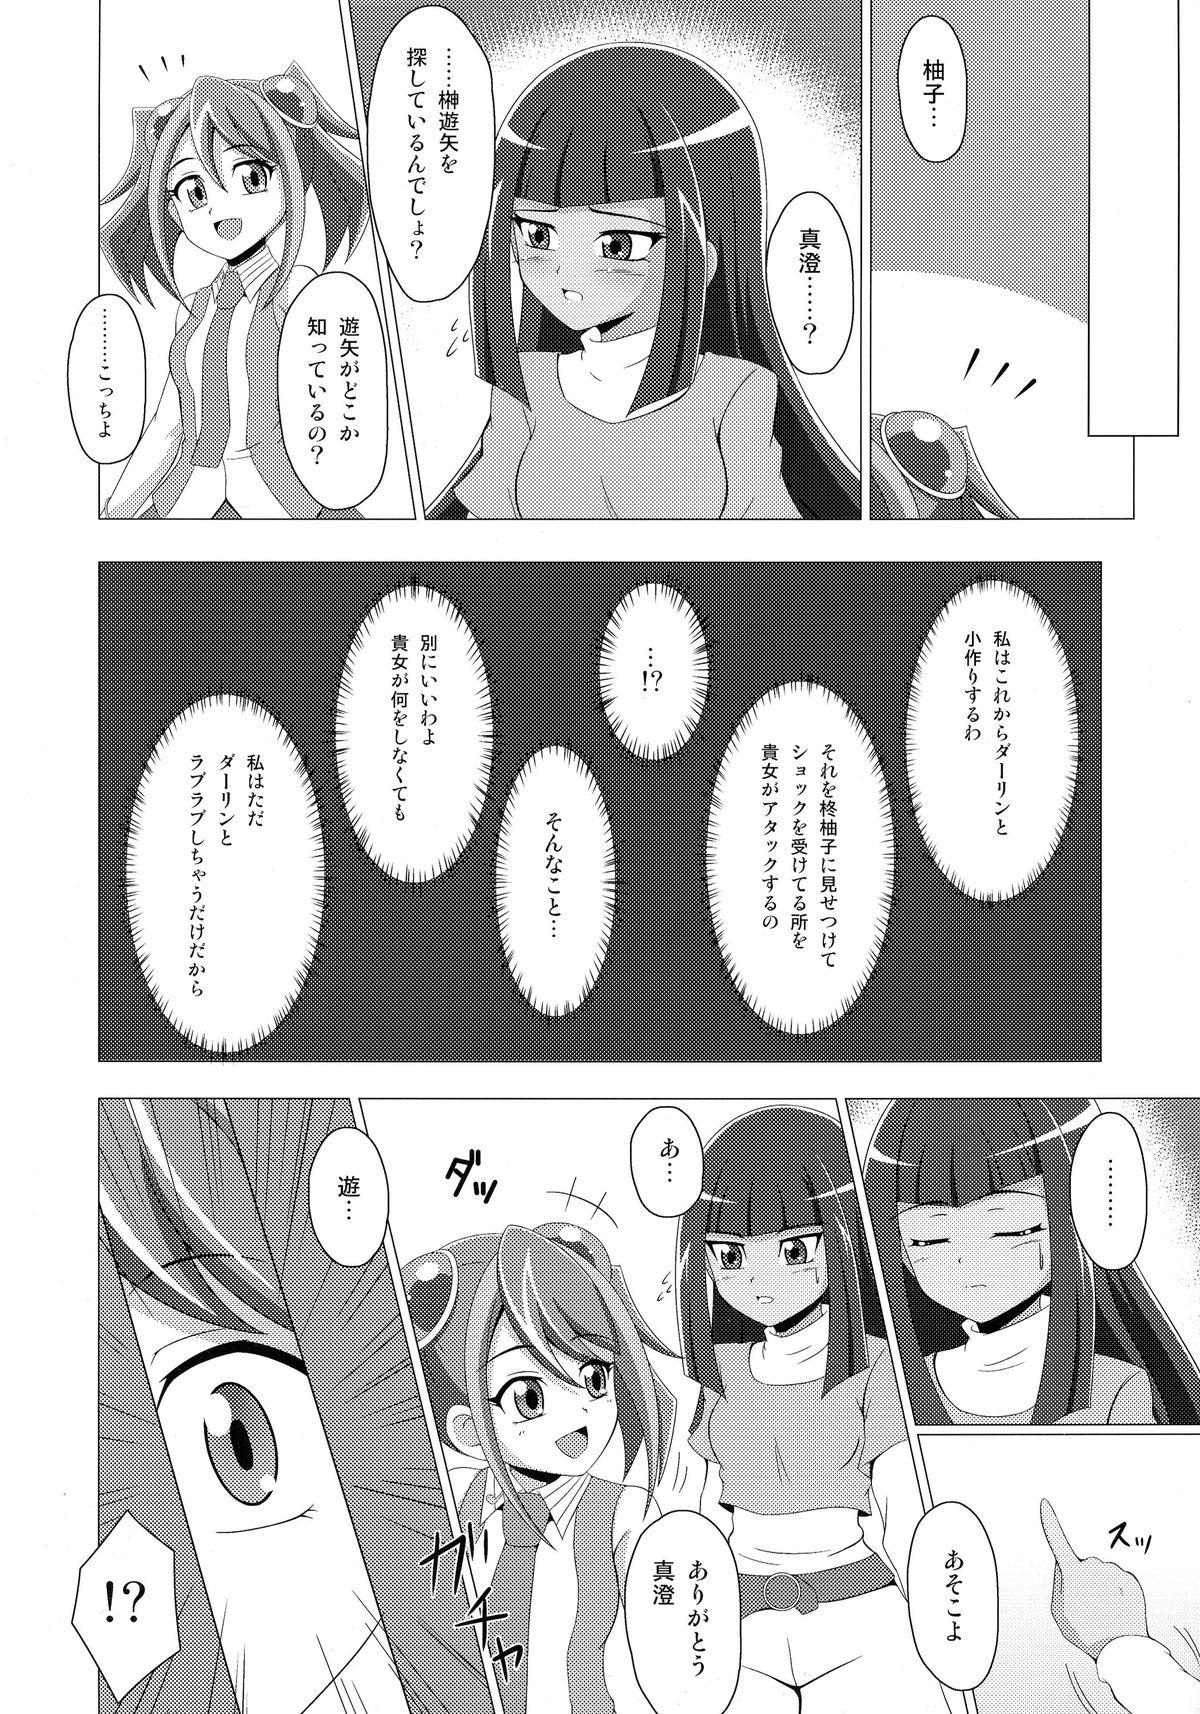 Mouth Mieru no Uranai dai Sakusen - Yu-gi-oh arc-v Candid - Page 5